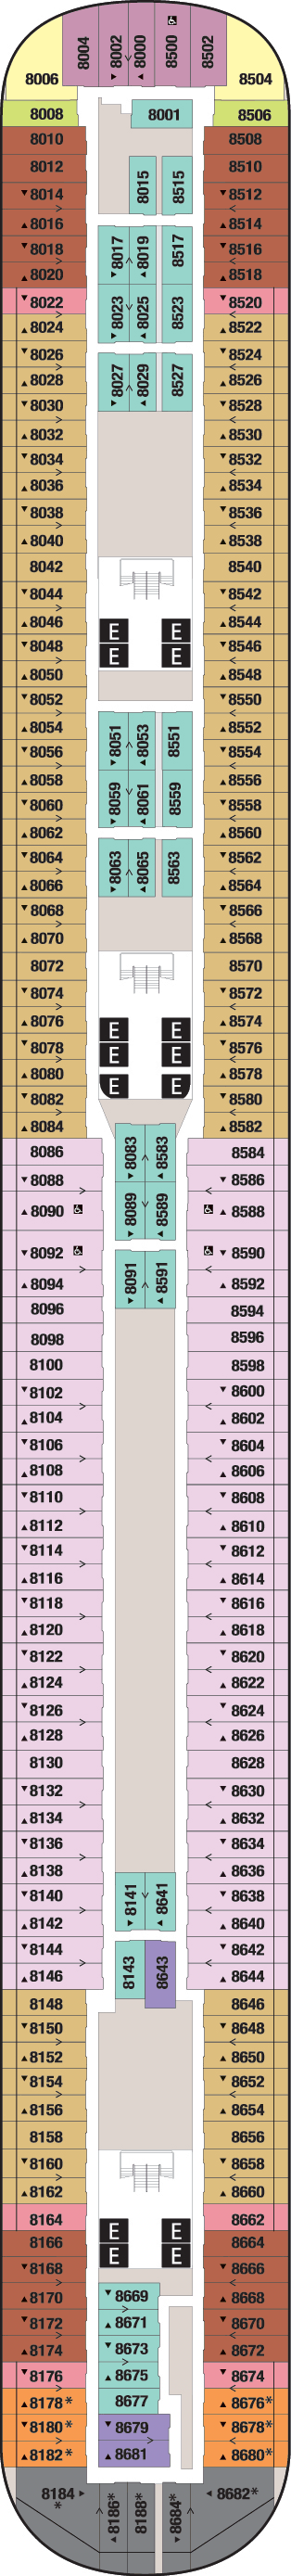 Deck 8 Deck Plan